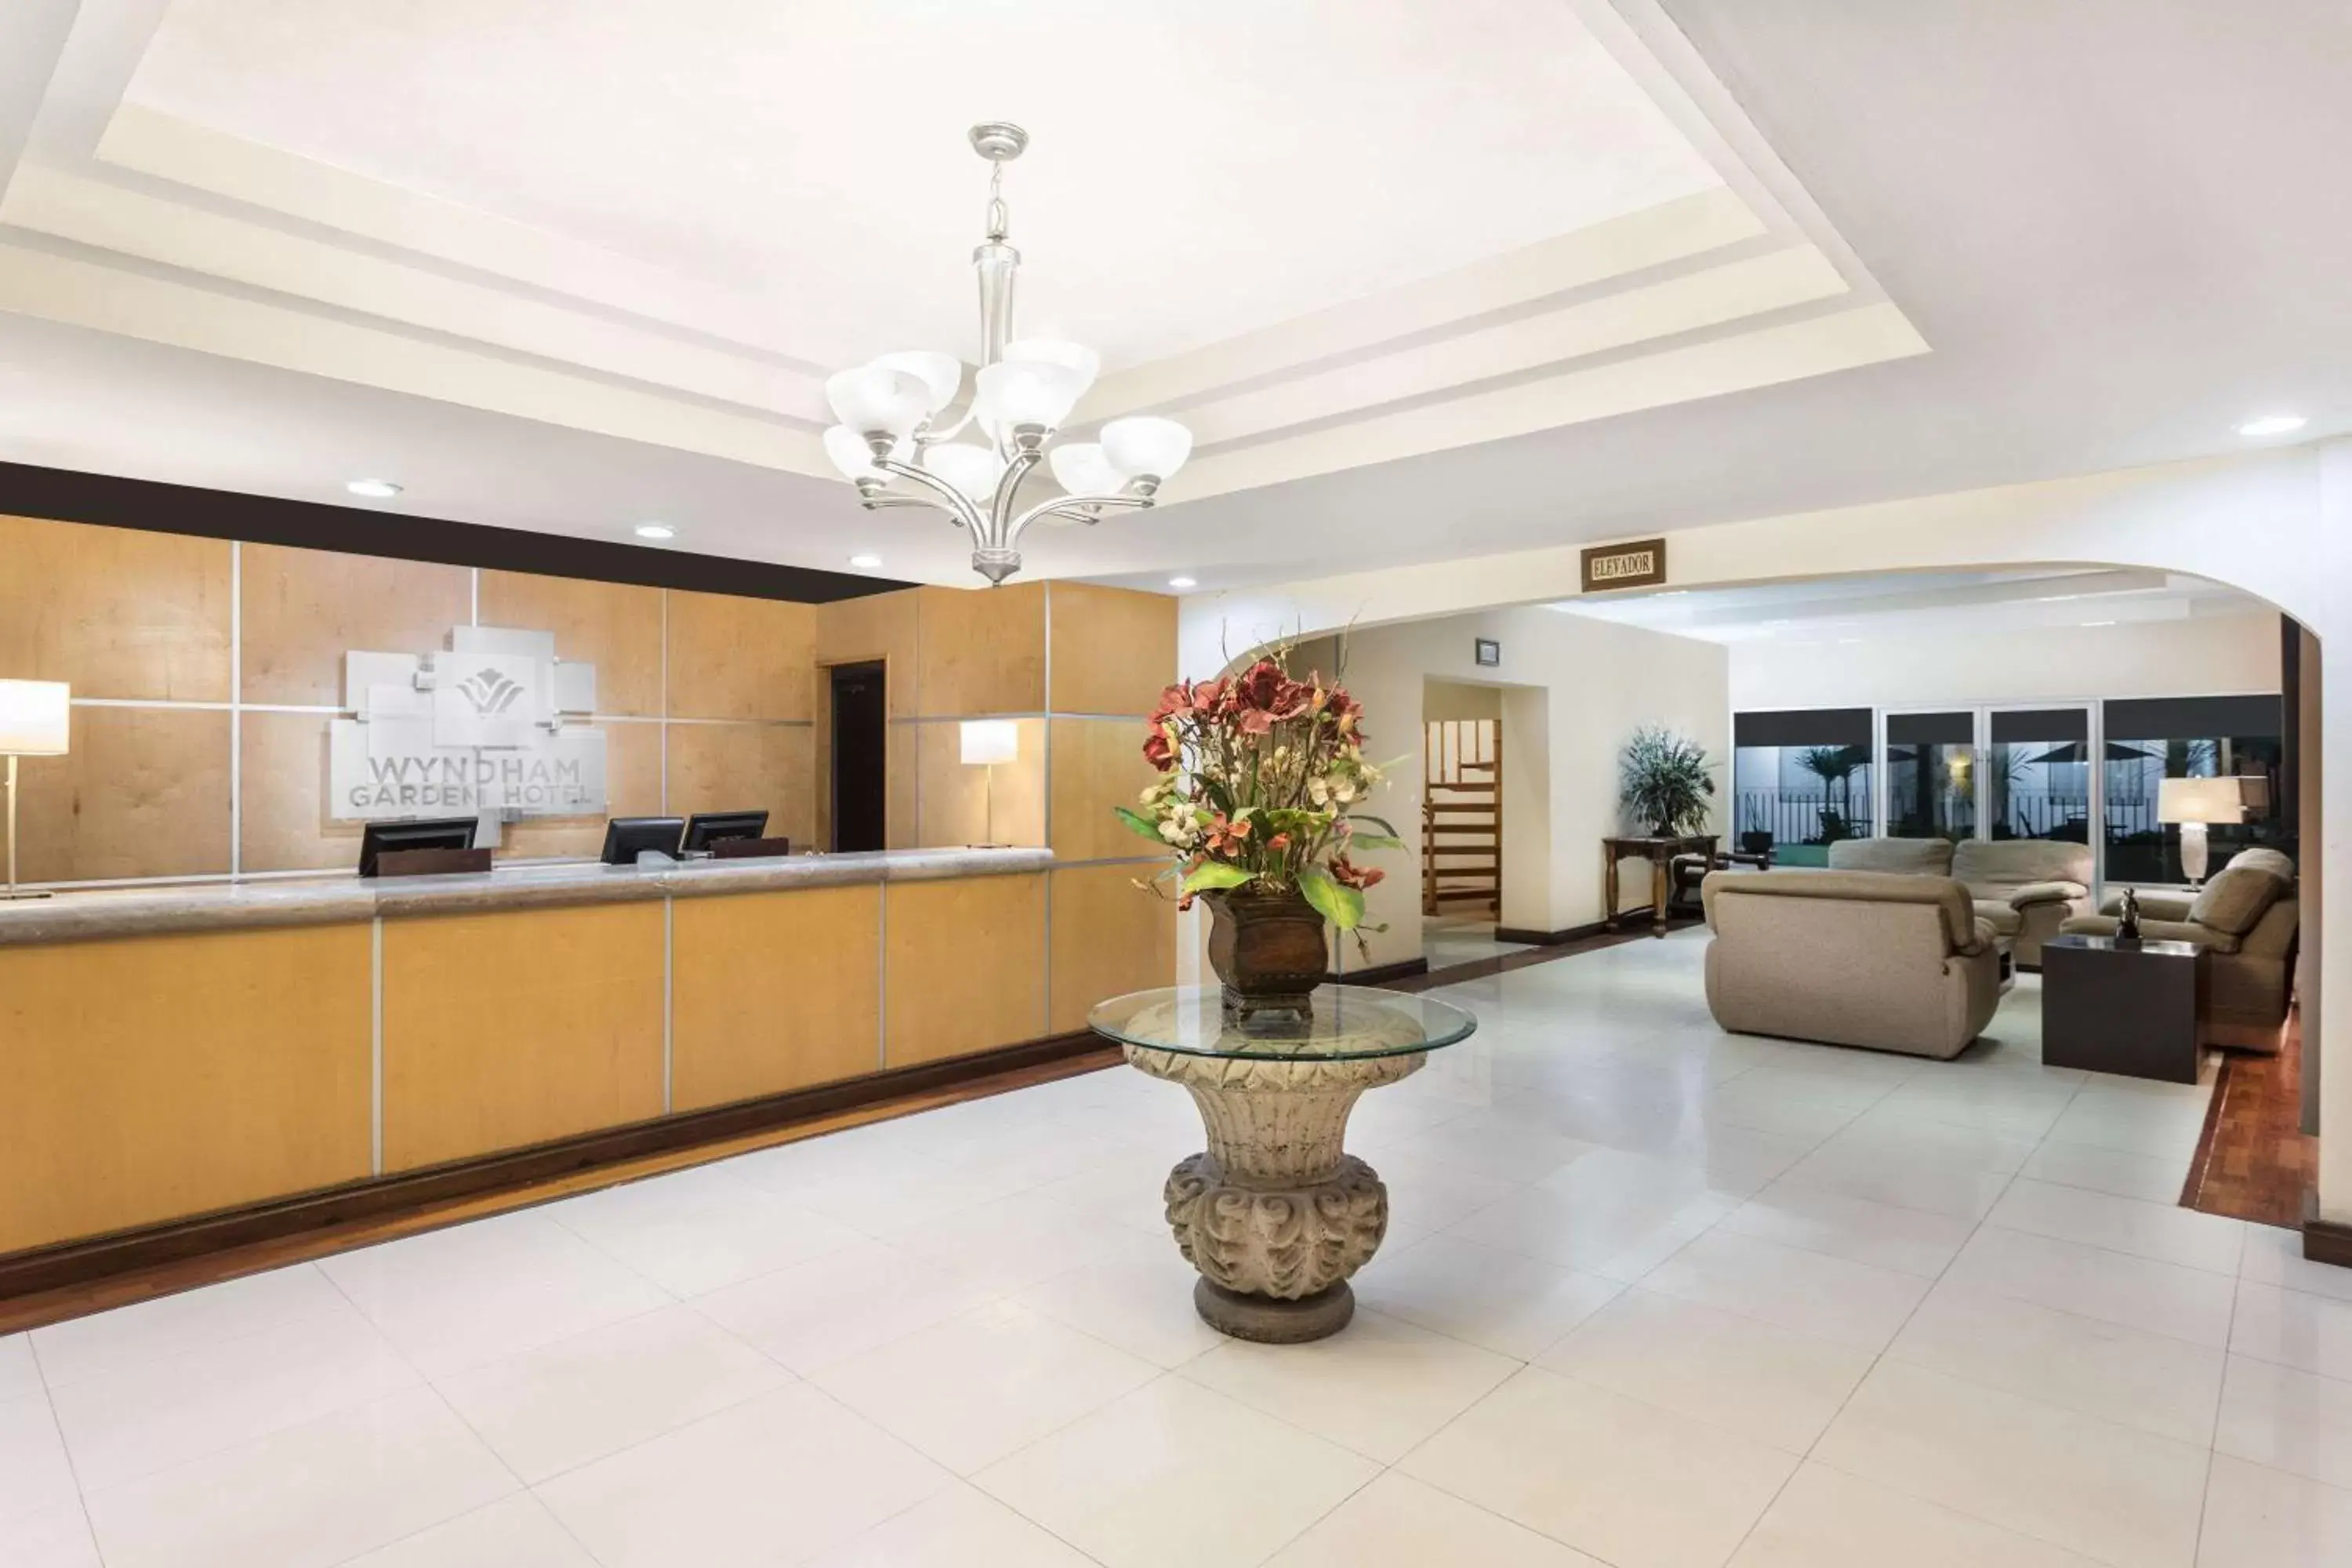 Lobby or reception, Lobby/Reception in Wyndham Garden Obregon